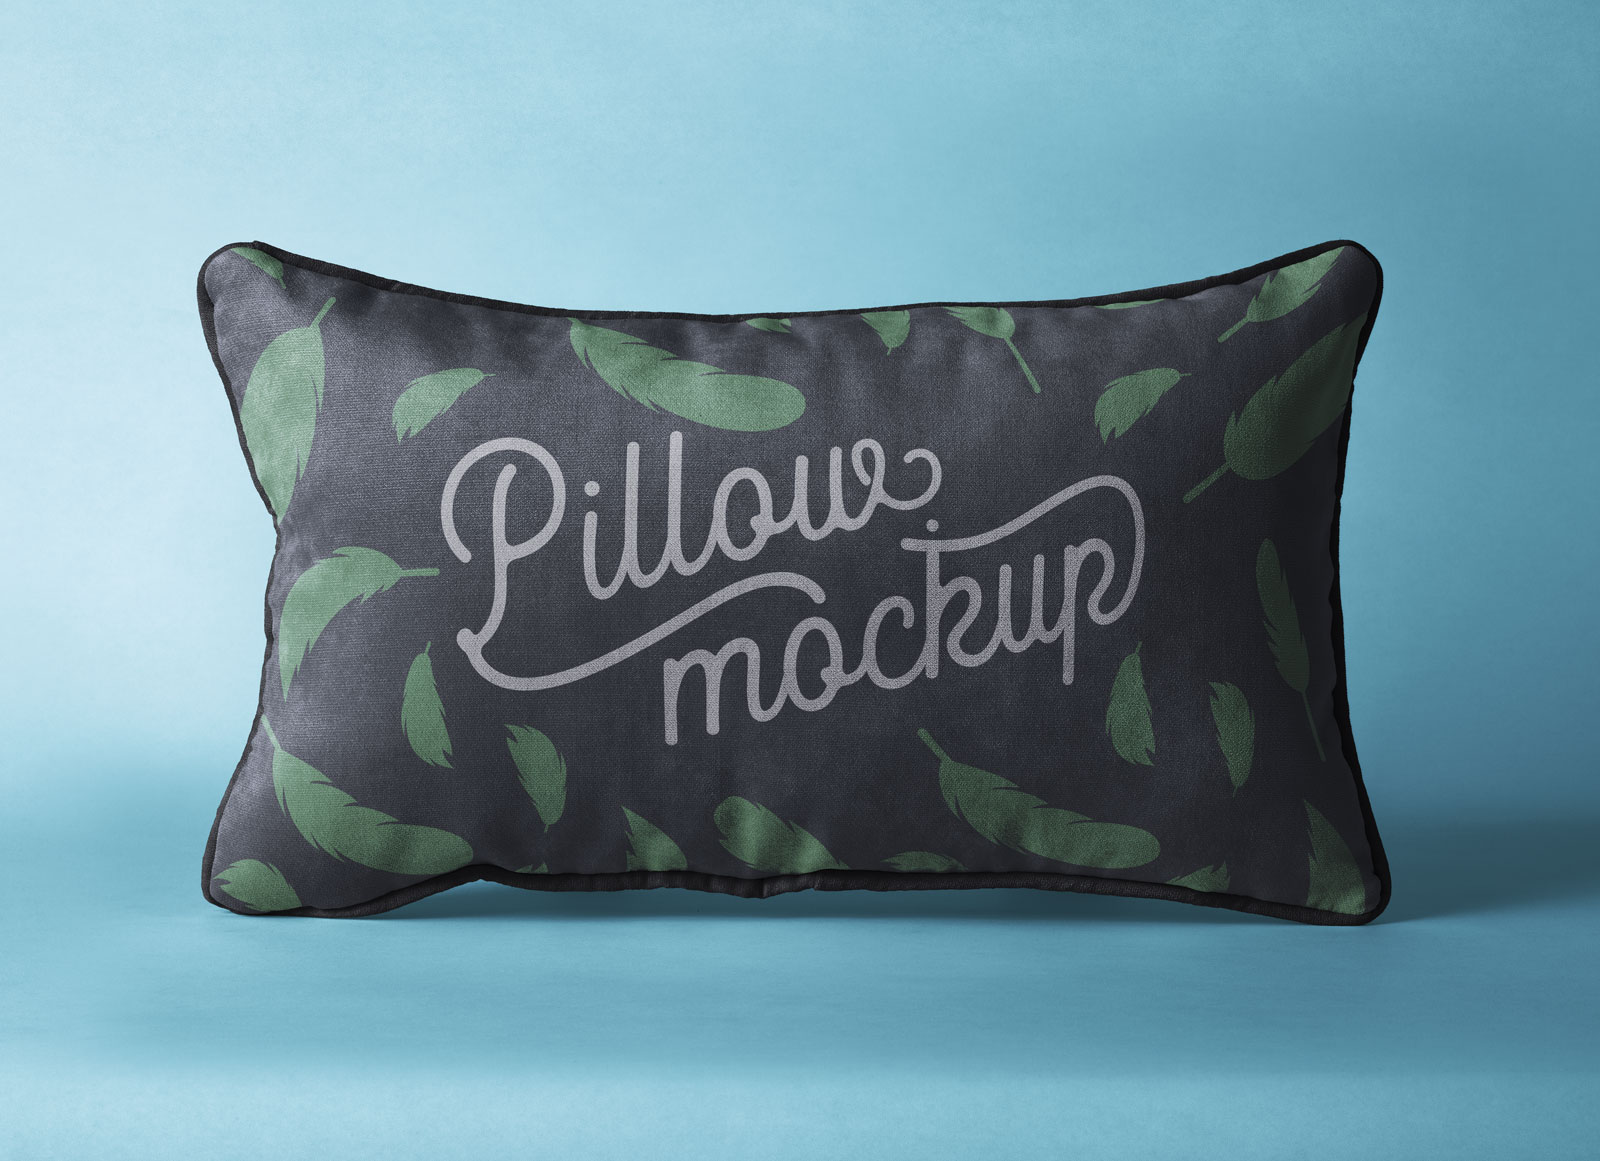 Free-Rectangular-Pillow-Mockup-PSD